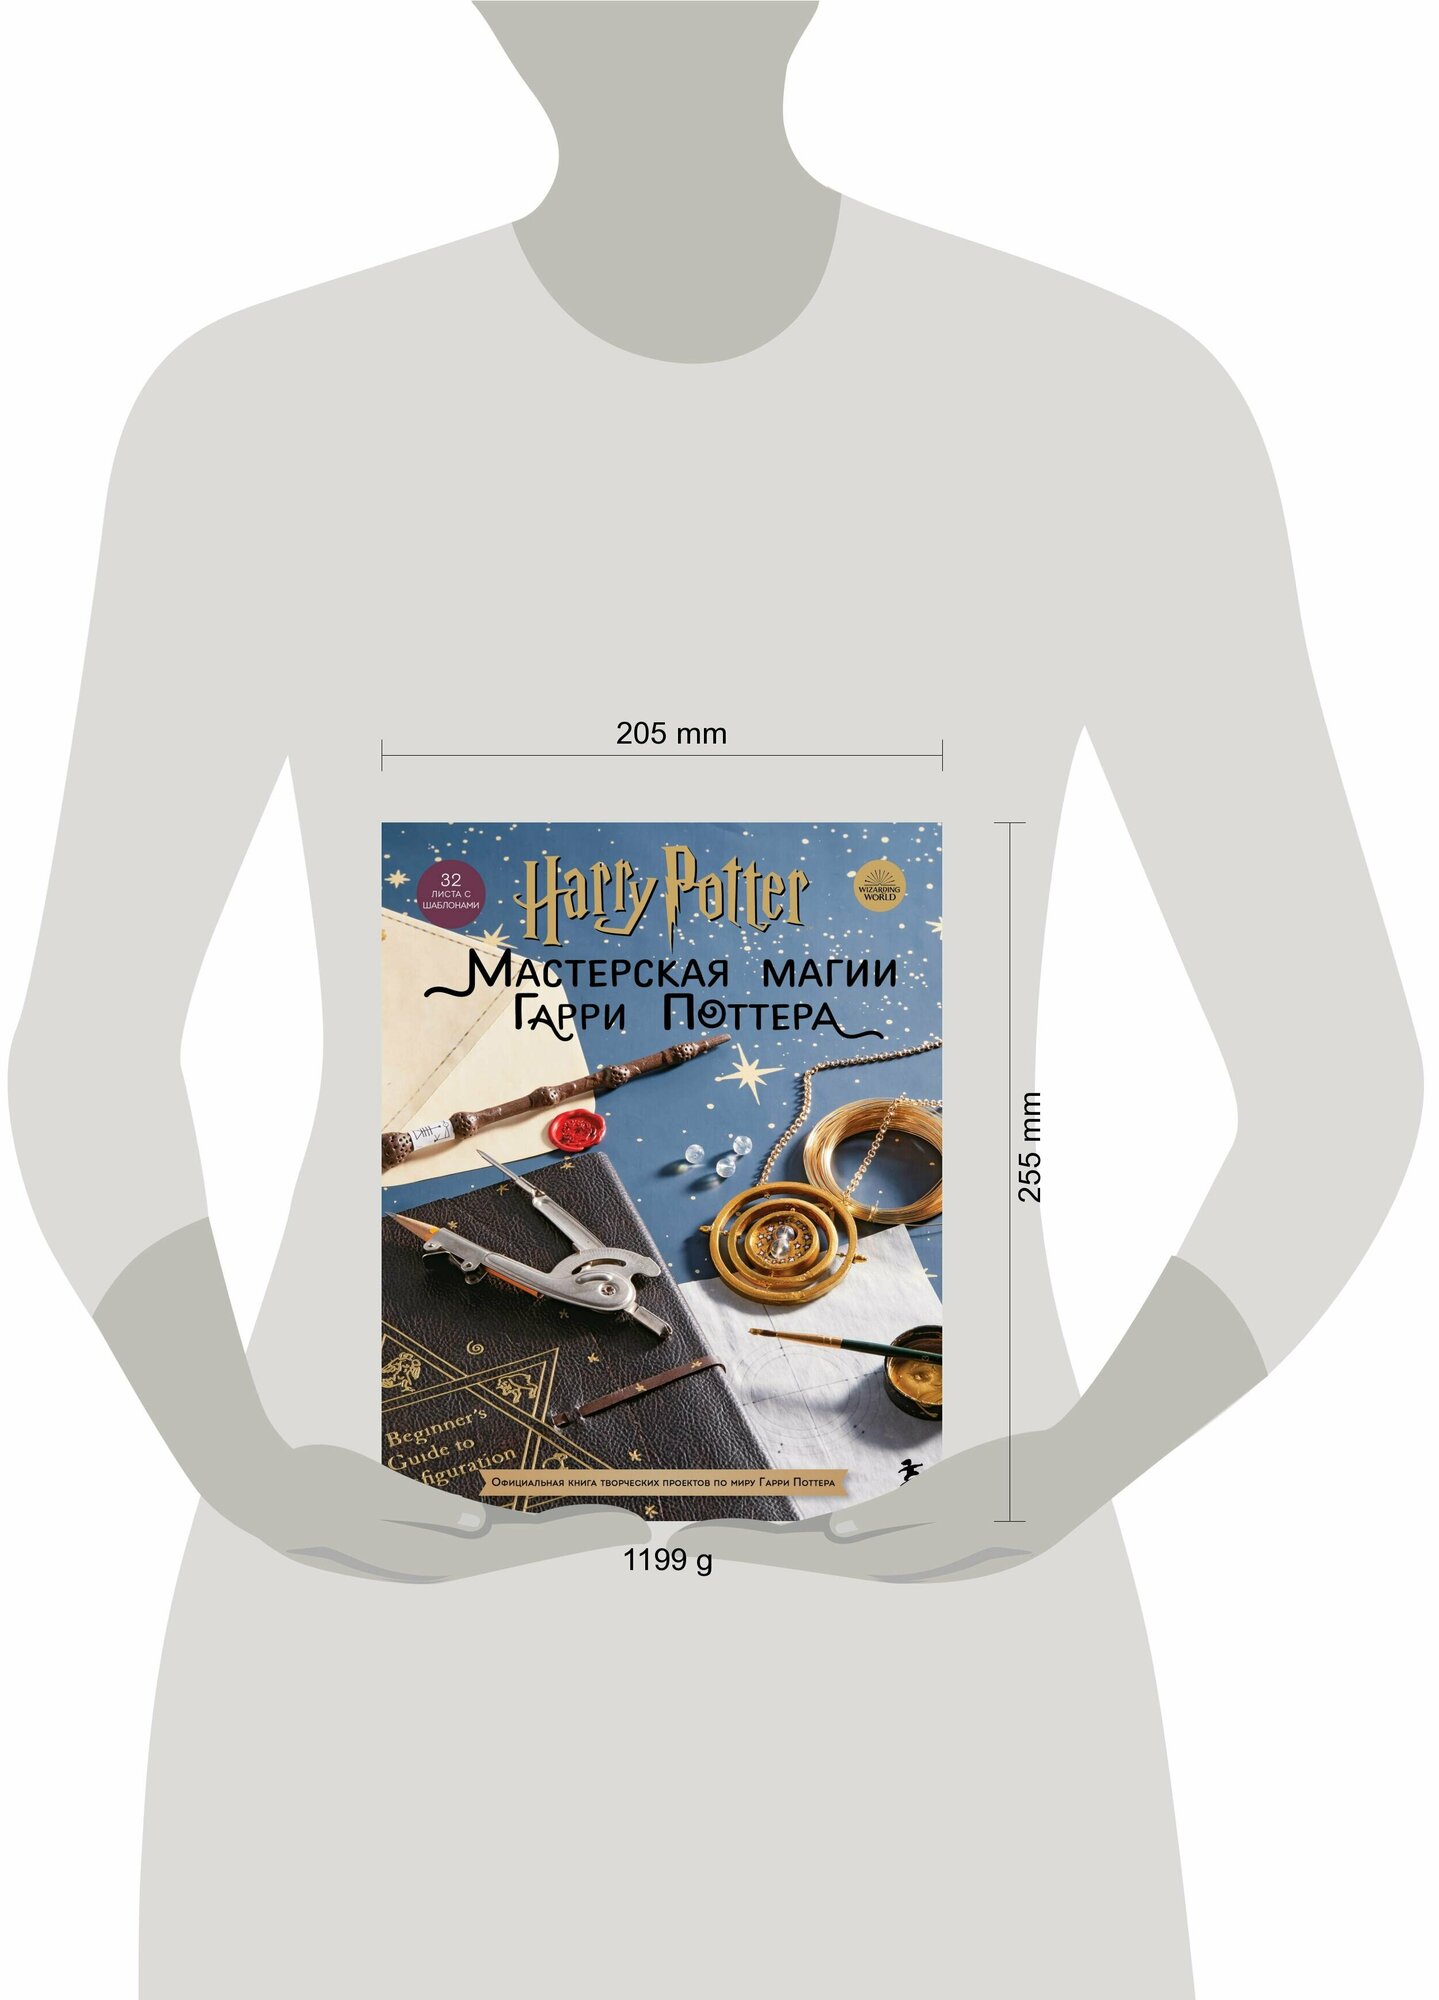 Harry Potter. Мастерская МАГИИ Гарри Поттера. Официальная книга творческих проектов по миру Гарри Поттера - фото №6